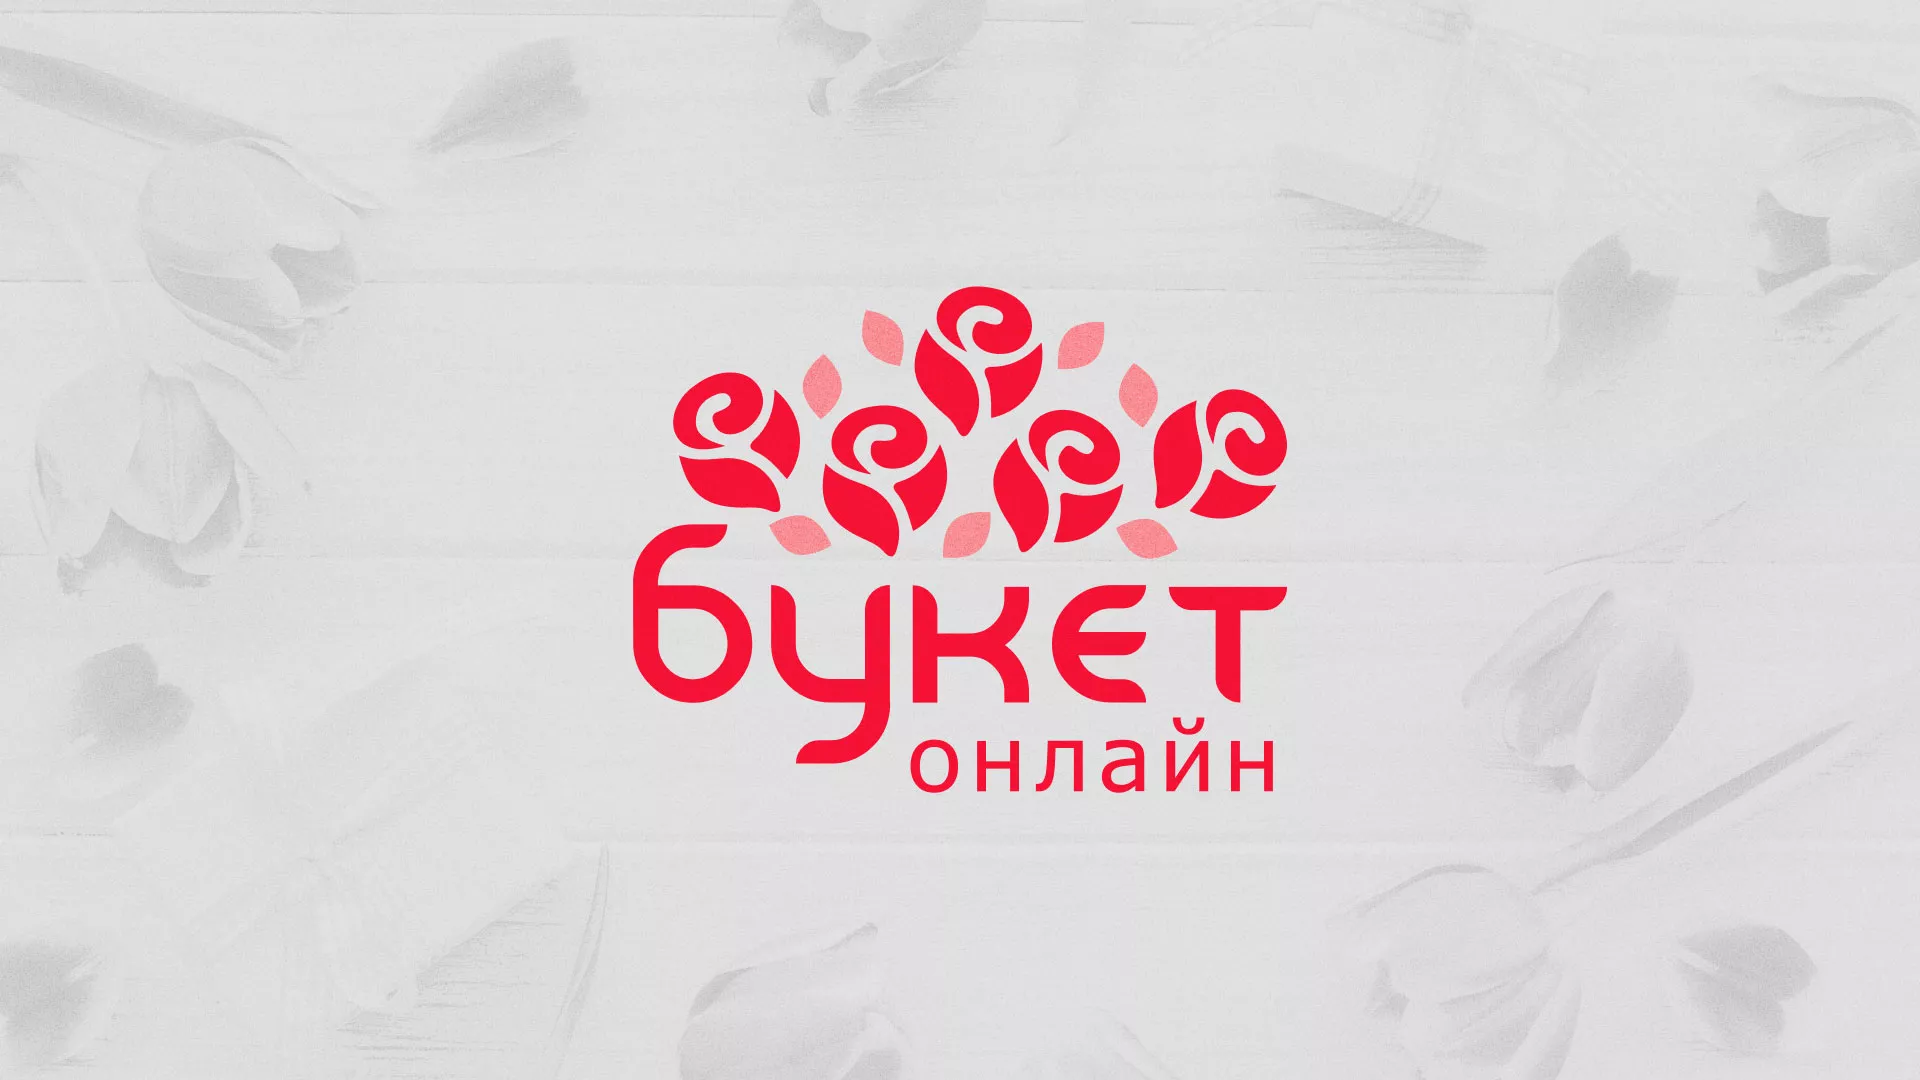 Создание интернет-магазина «Букет-онлайн» по цветам в Вятских Полянах